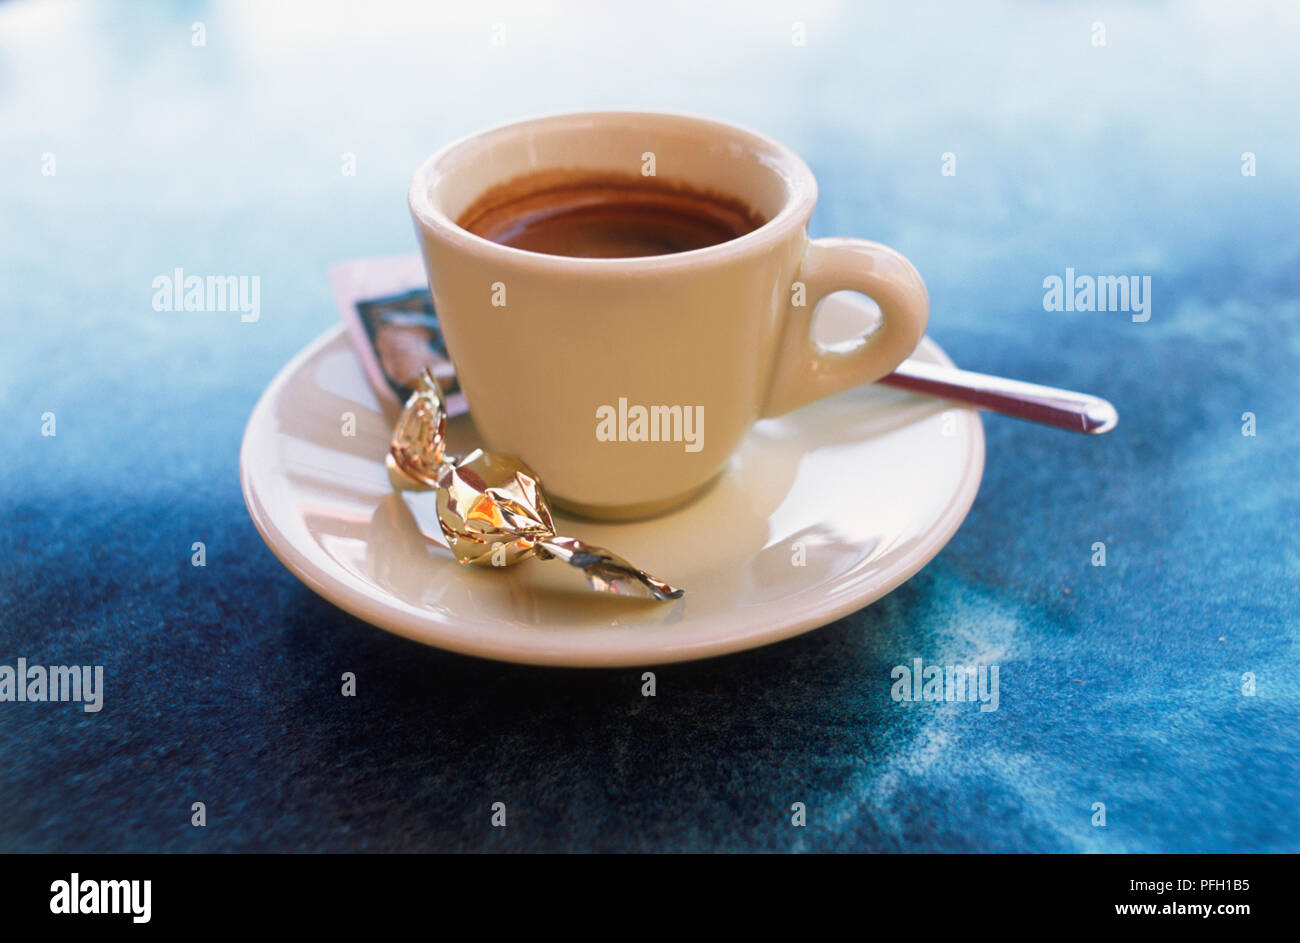 Tazza di caffè espresso, servita con zucchero e dolce sul piattino, close-up Foto Stock